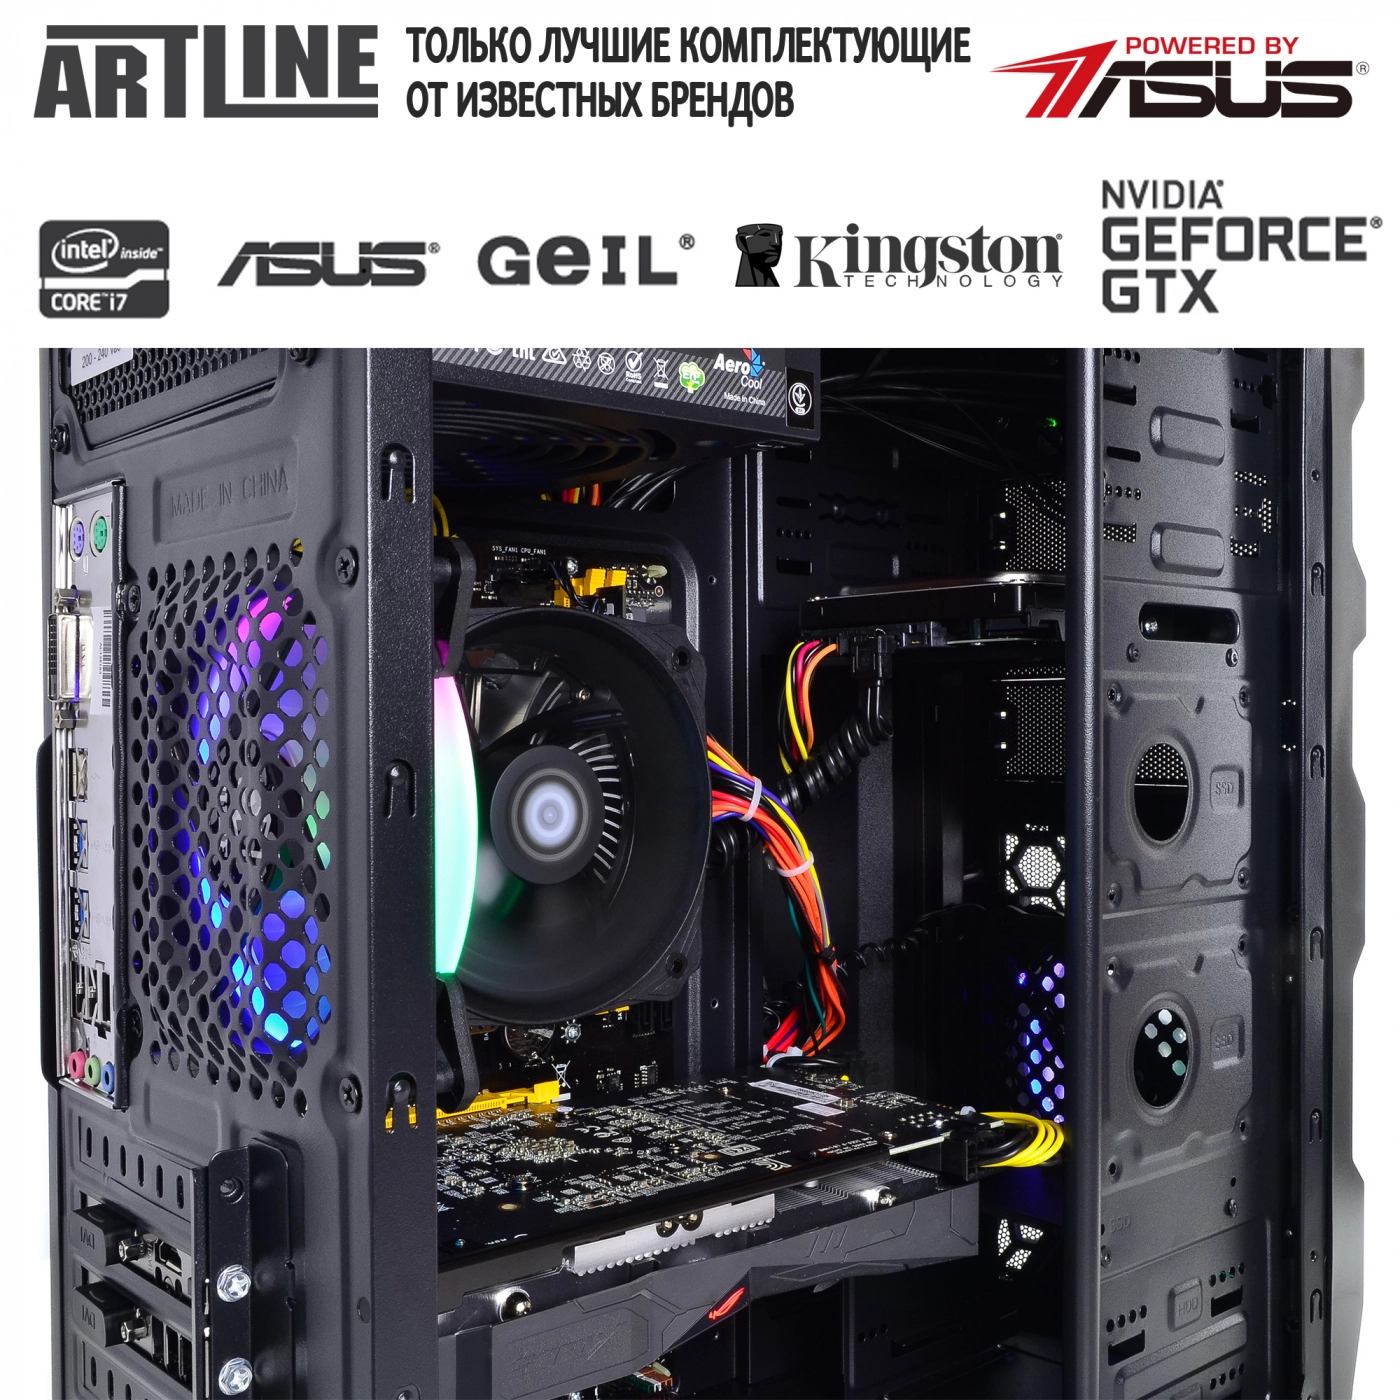 Купить Компьютер ARTLINE Gaming X46v32 - фото 6